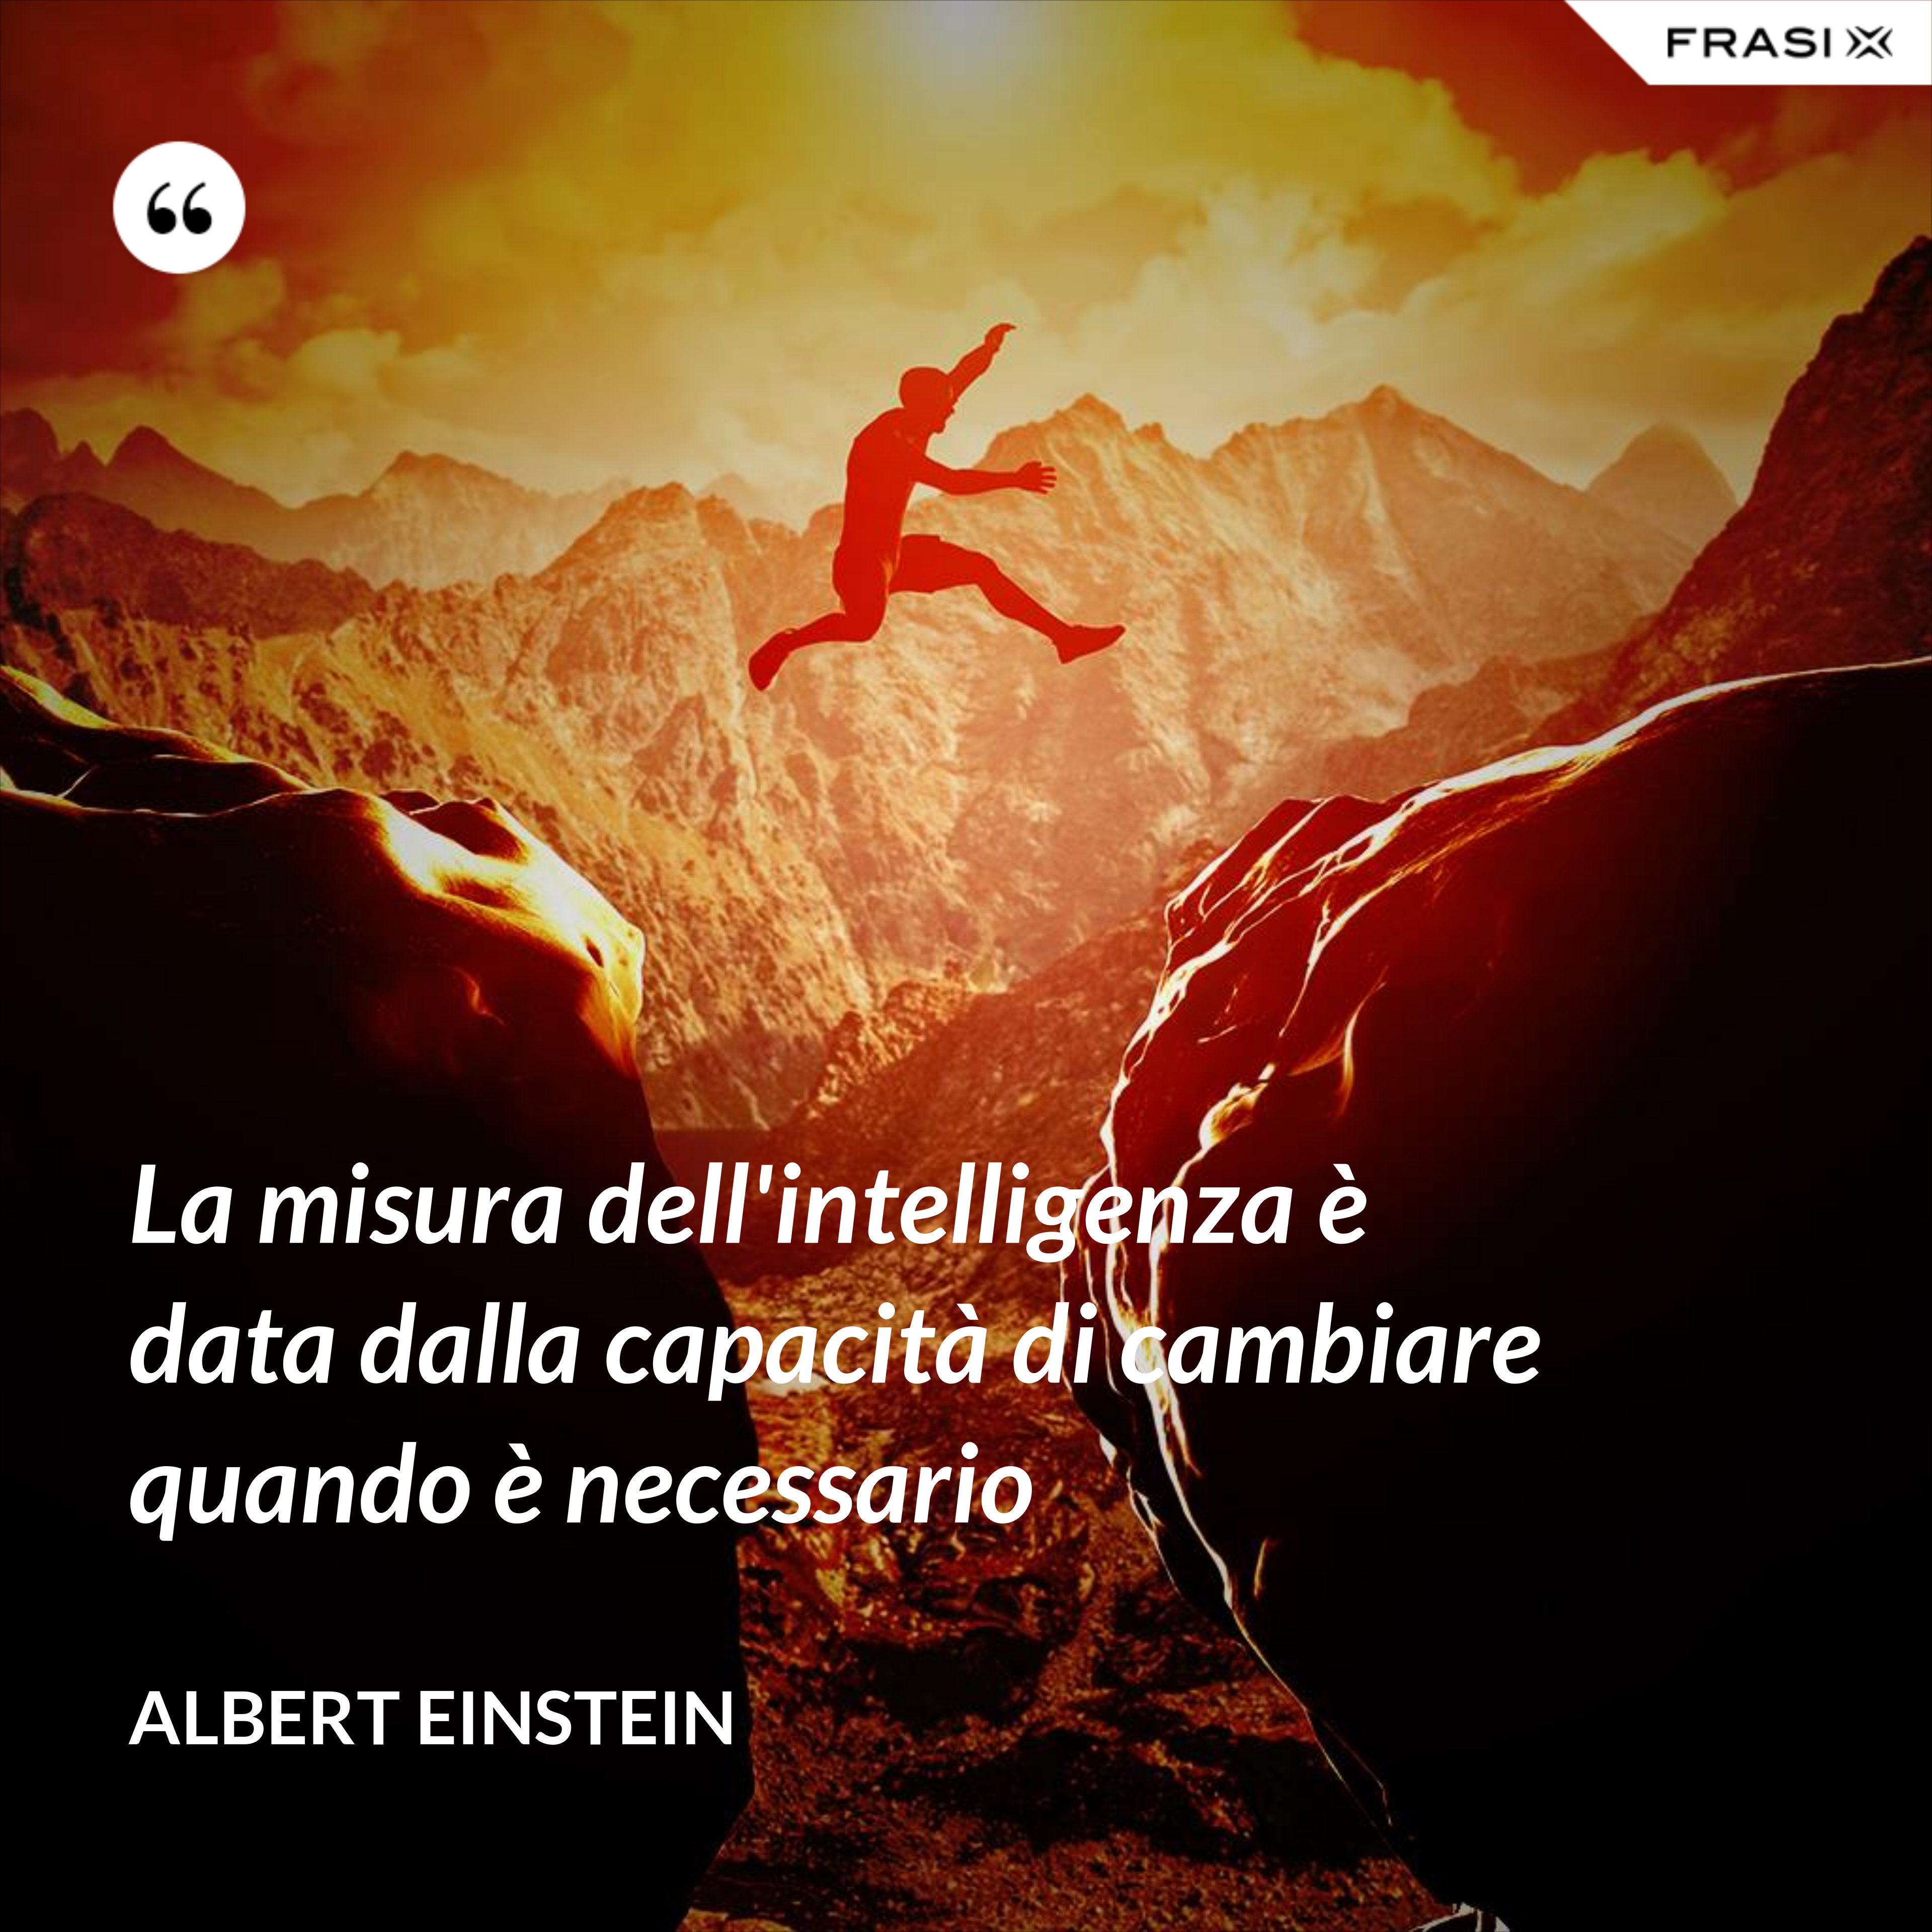 La misura dell'intelligenza è data dalla capacità di cambiare quando è necessario - Albert Einstein